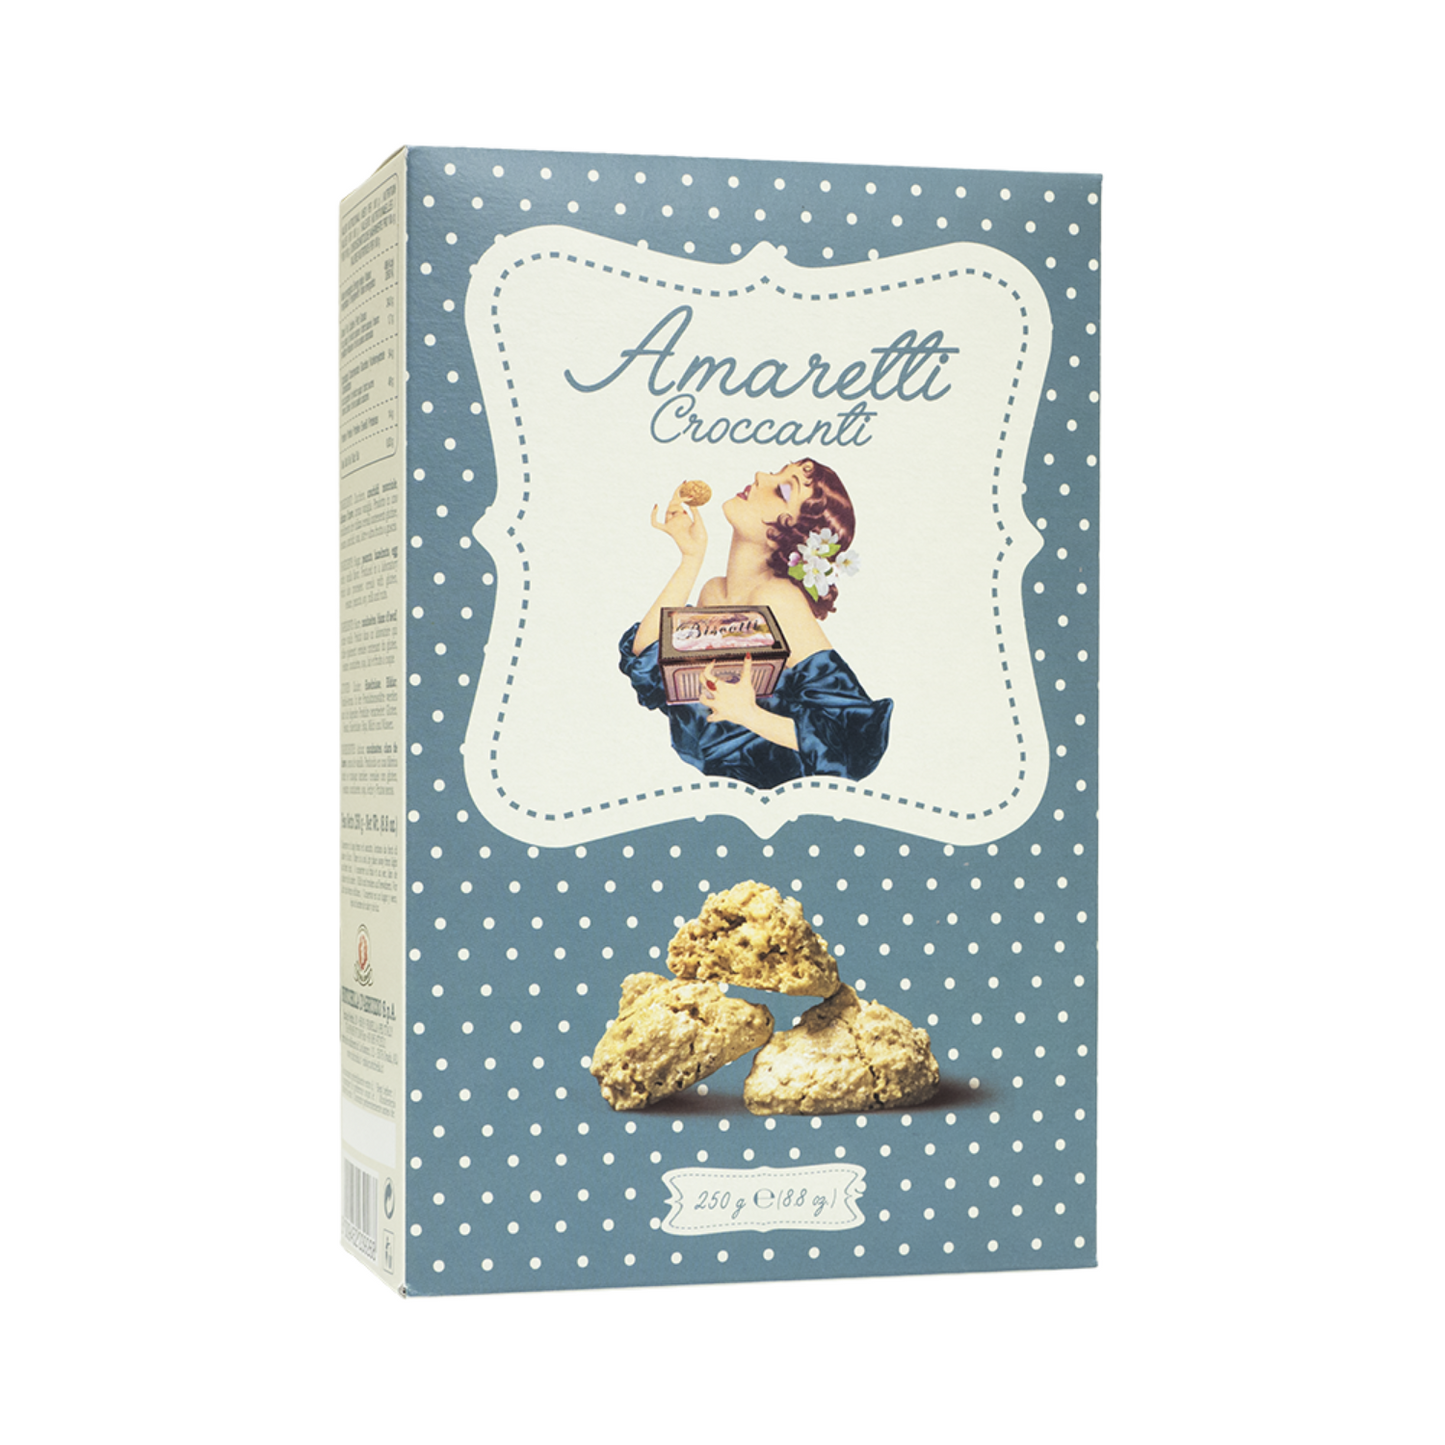 Amaretti croccanti in BOX - 250gr (2 stuks)